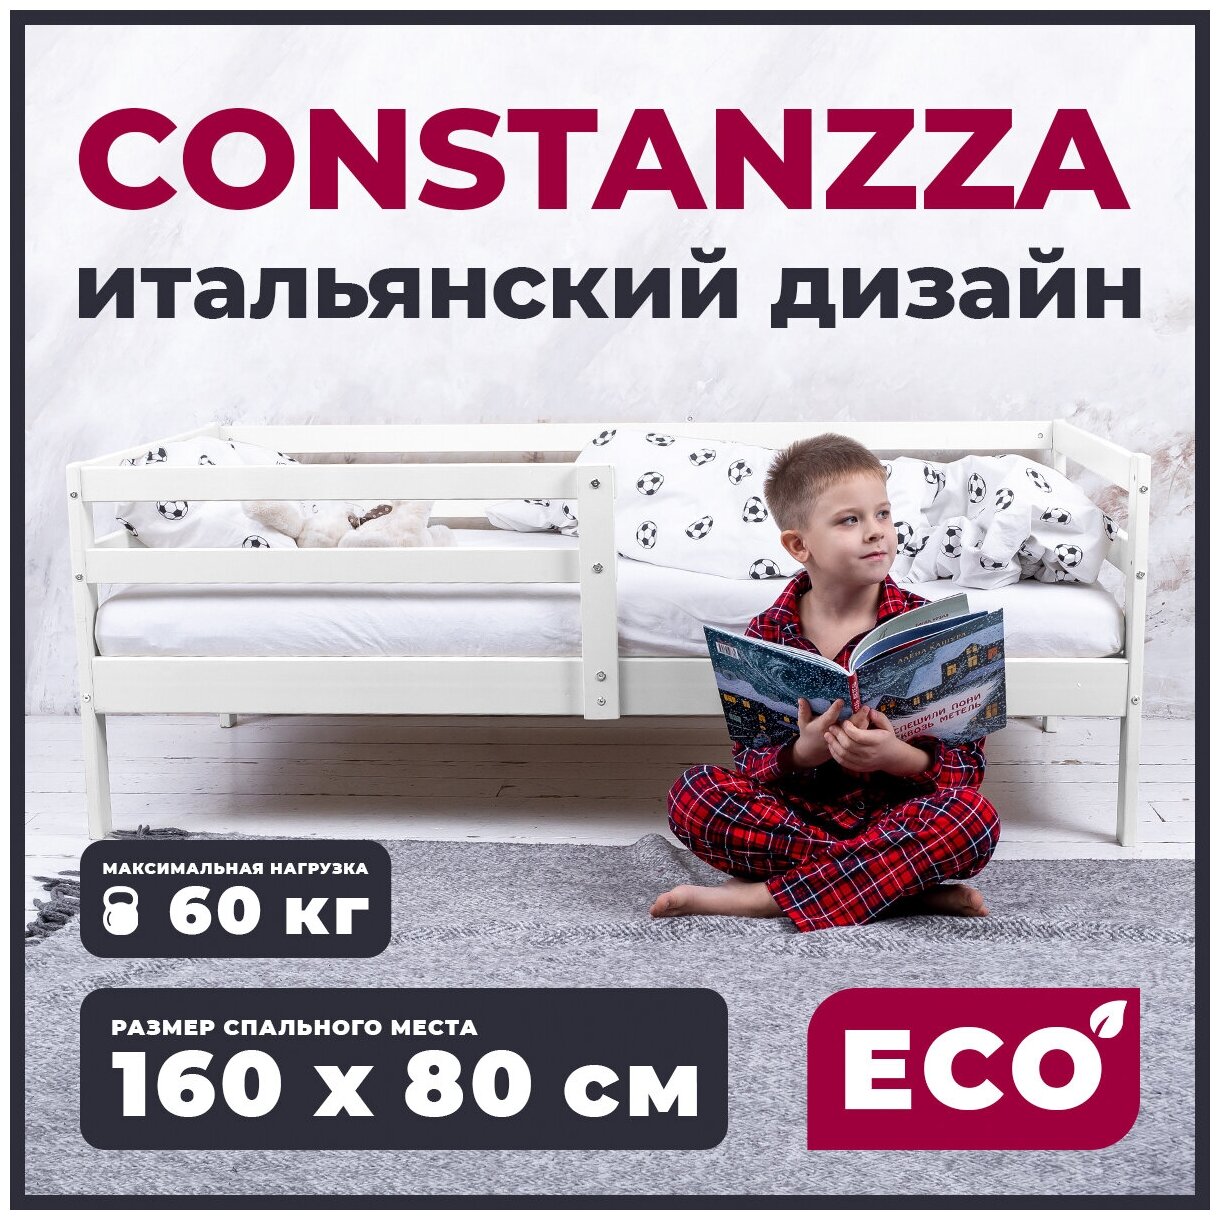 Кровать SWEET BABY Constanzza